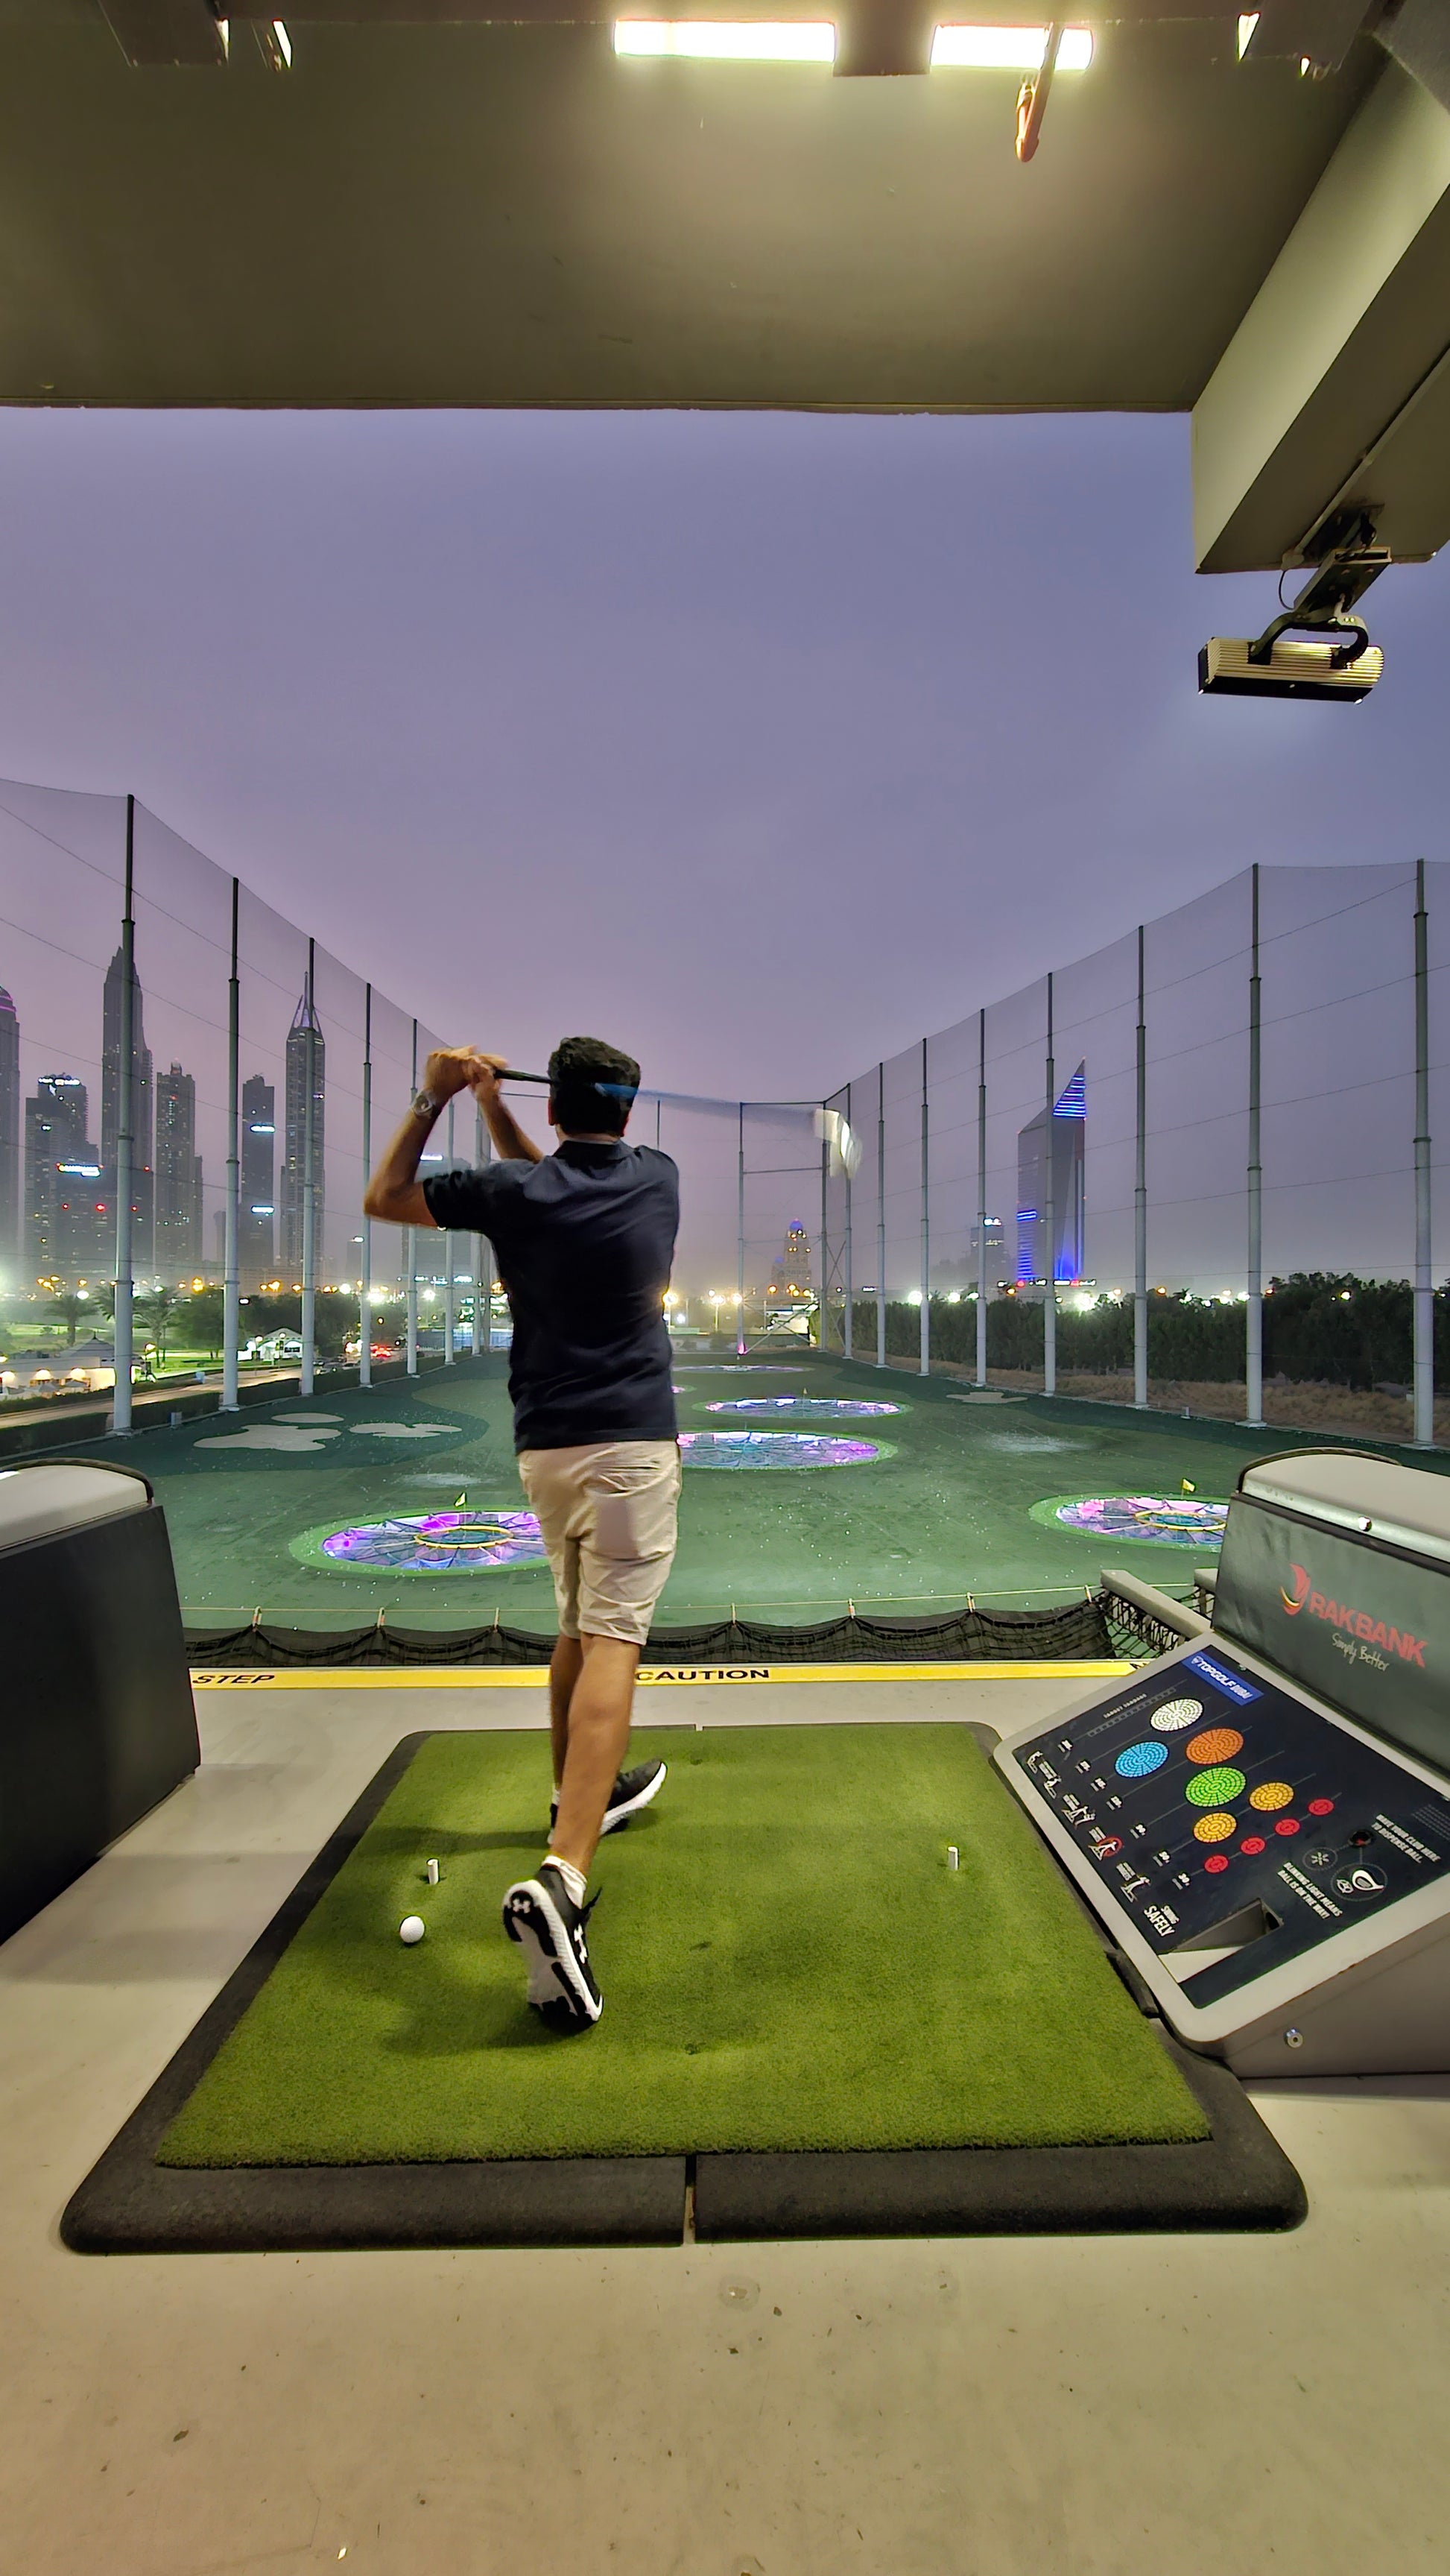  Top spots in Dubai: topgolf 